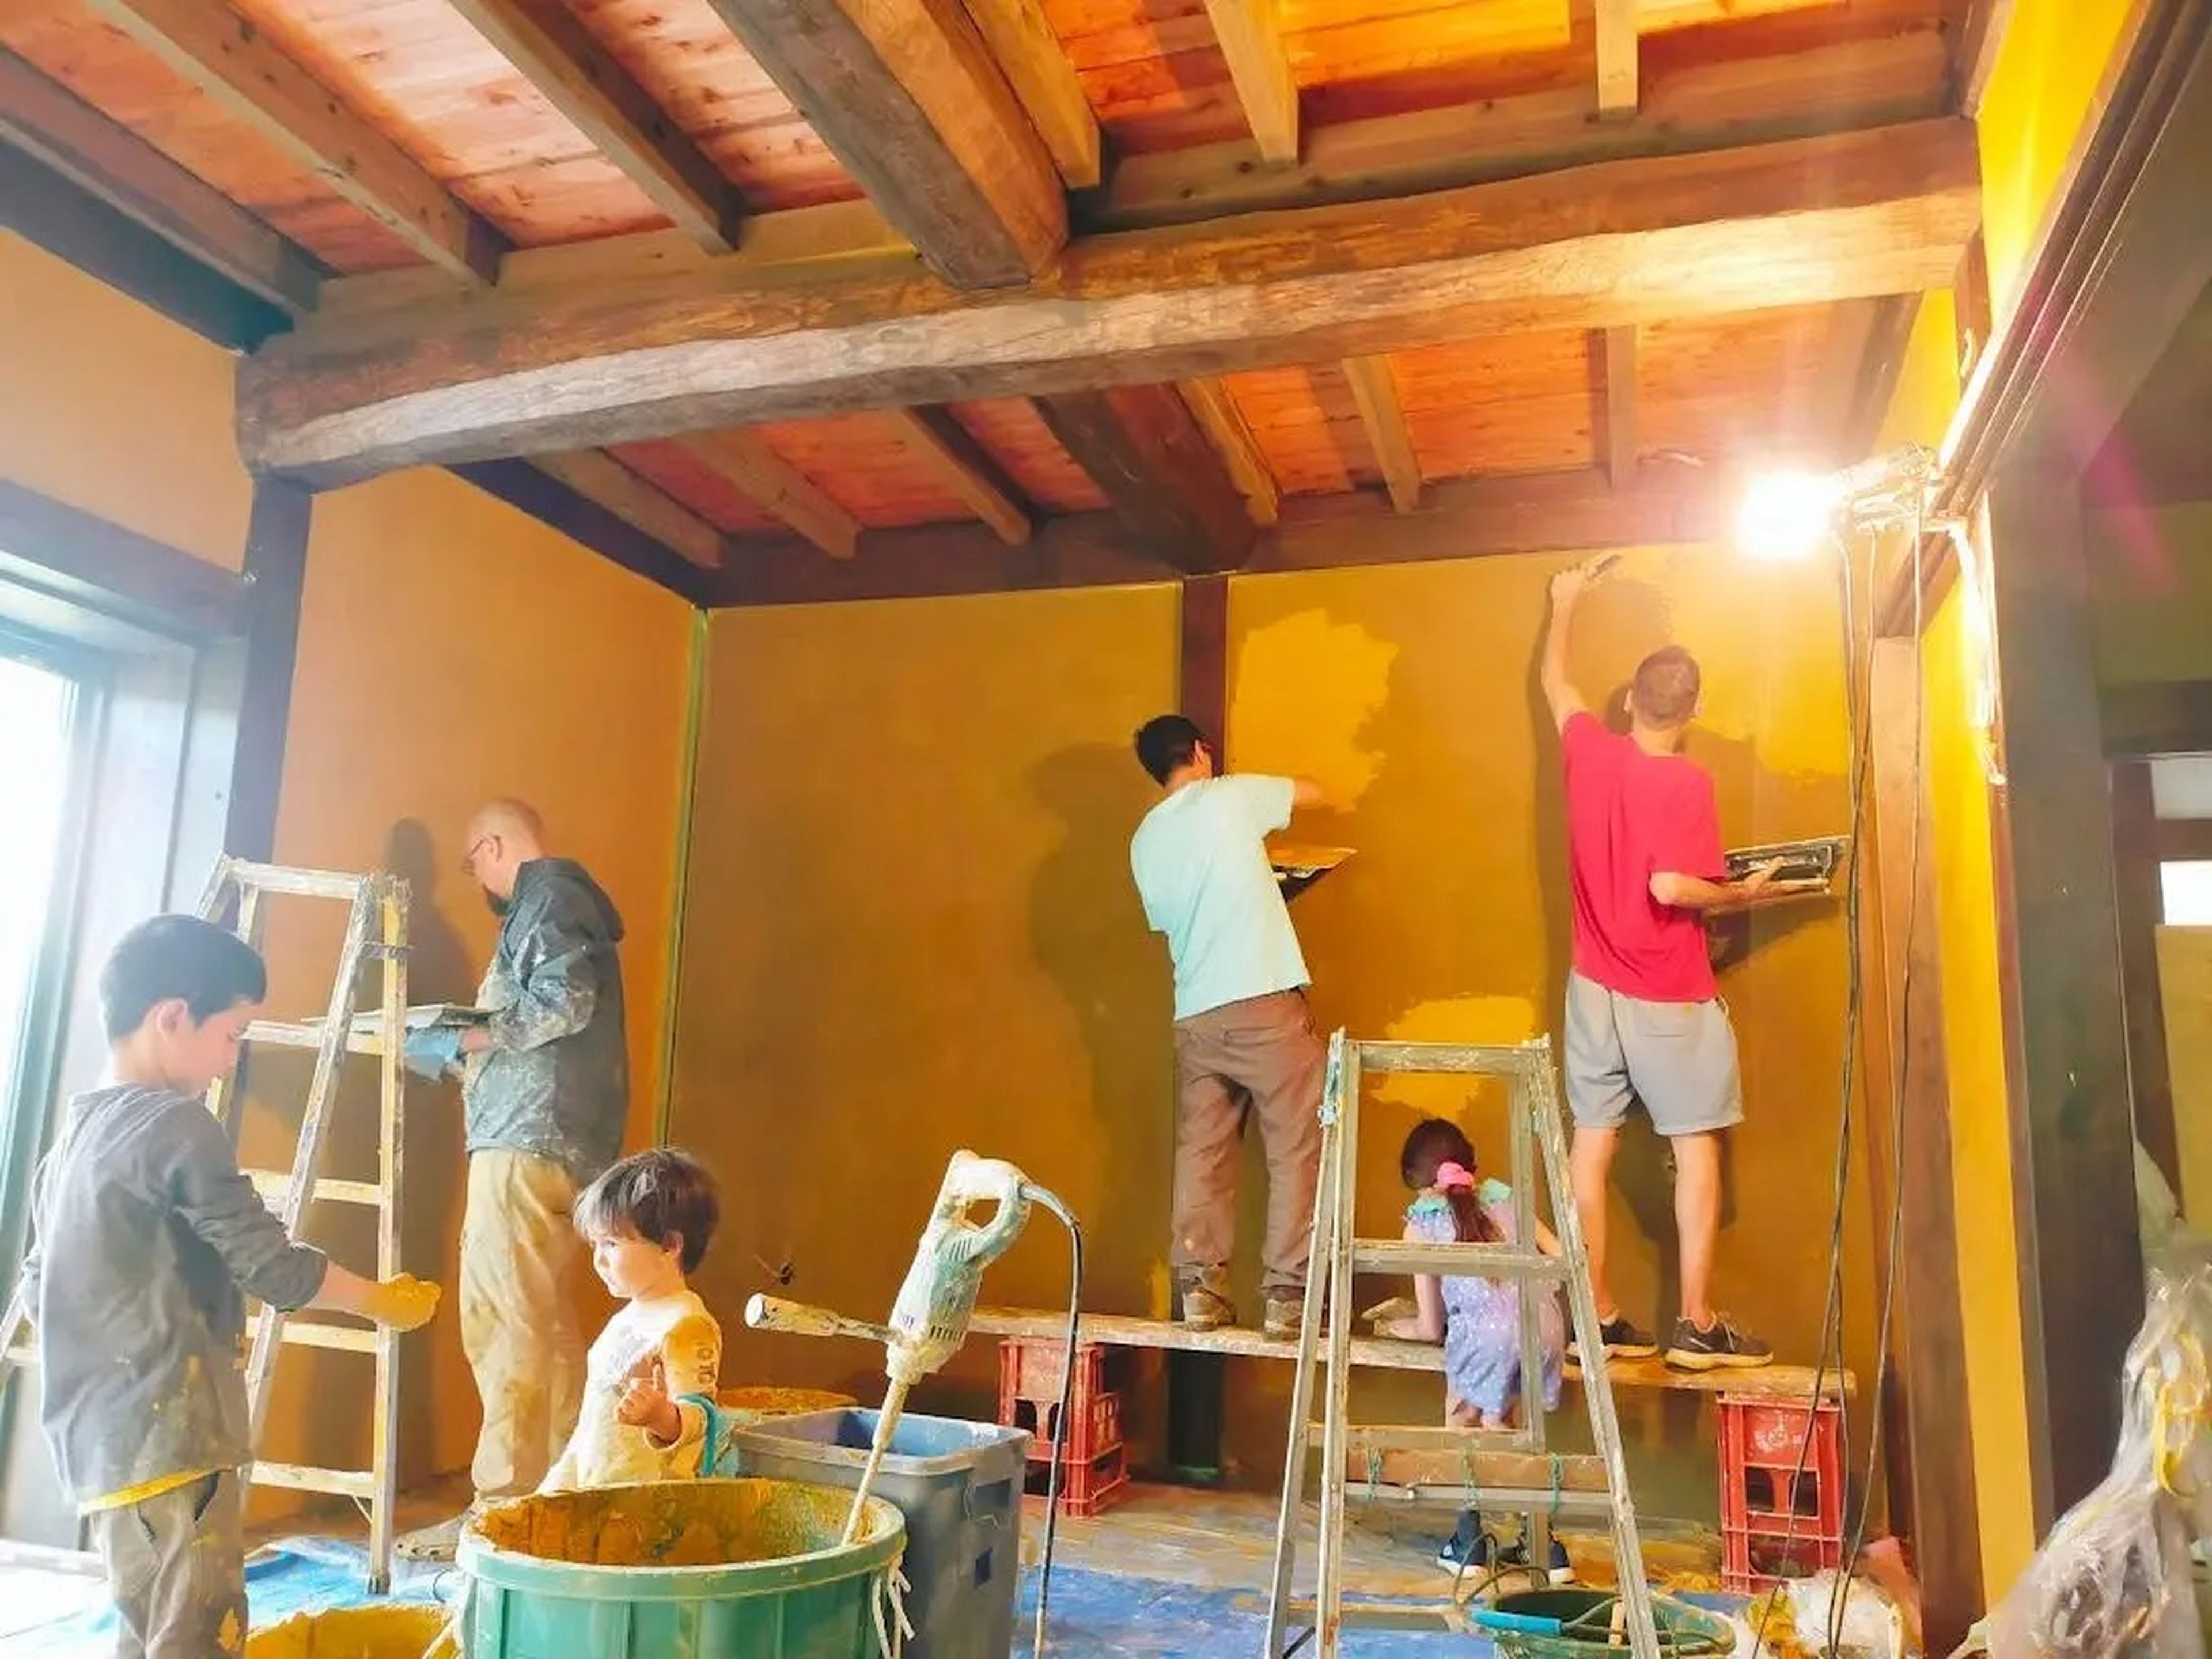 La familia Nagy y sus amigos renovando las paredes de un dormitorio de su casa.